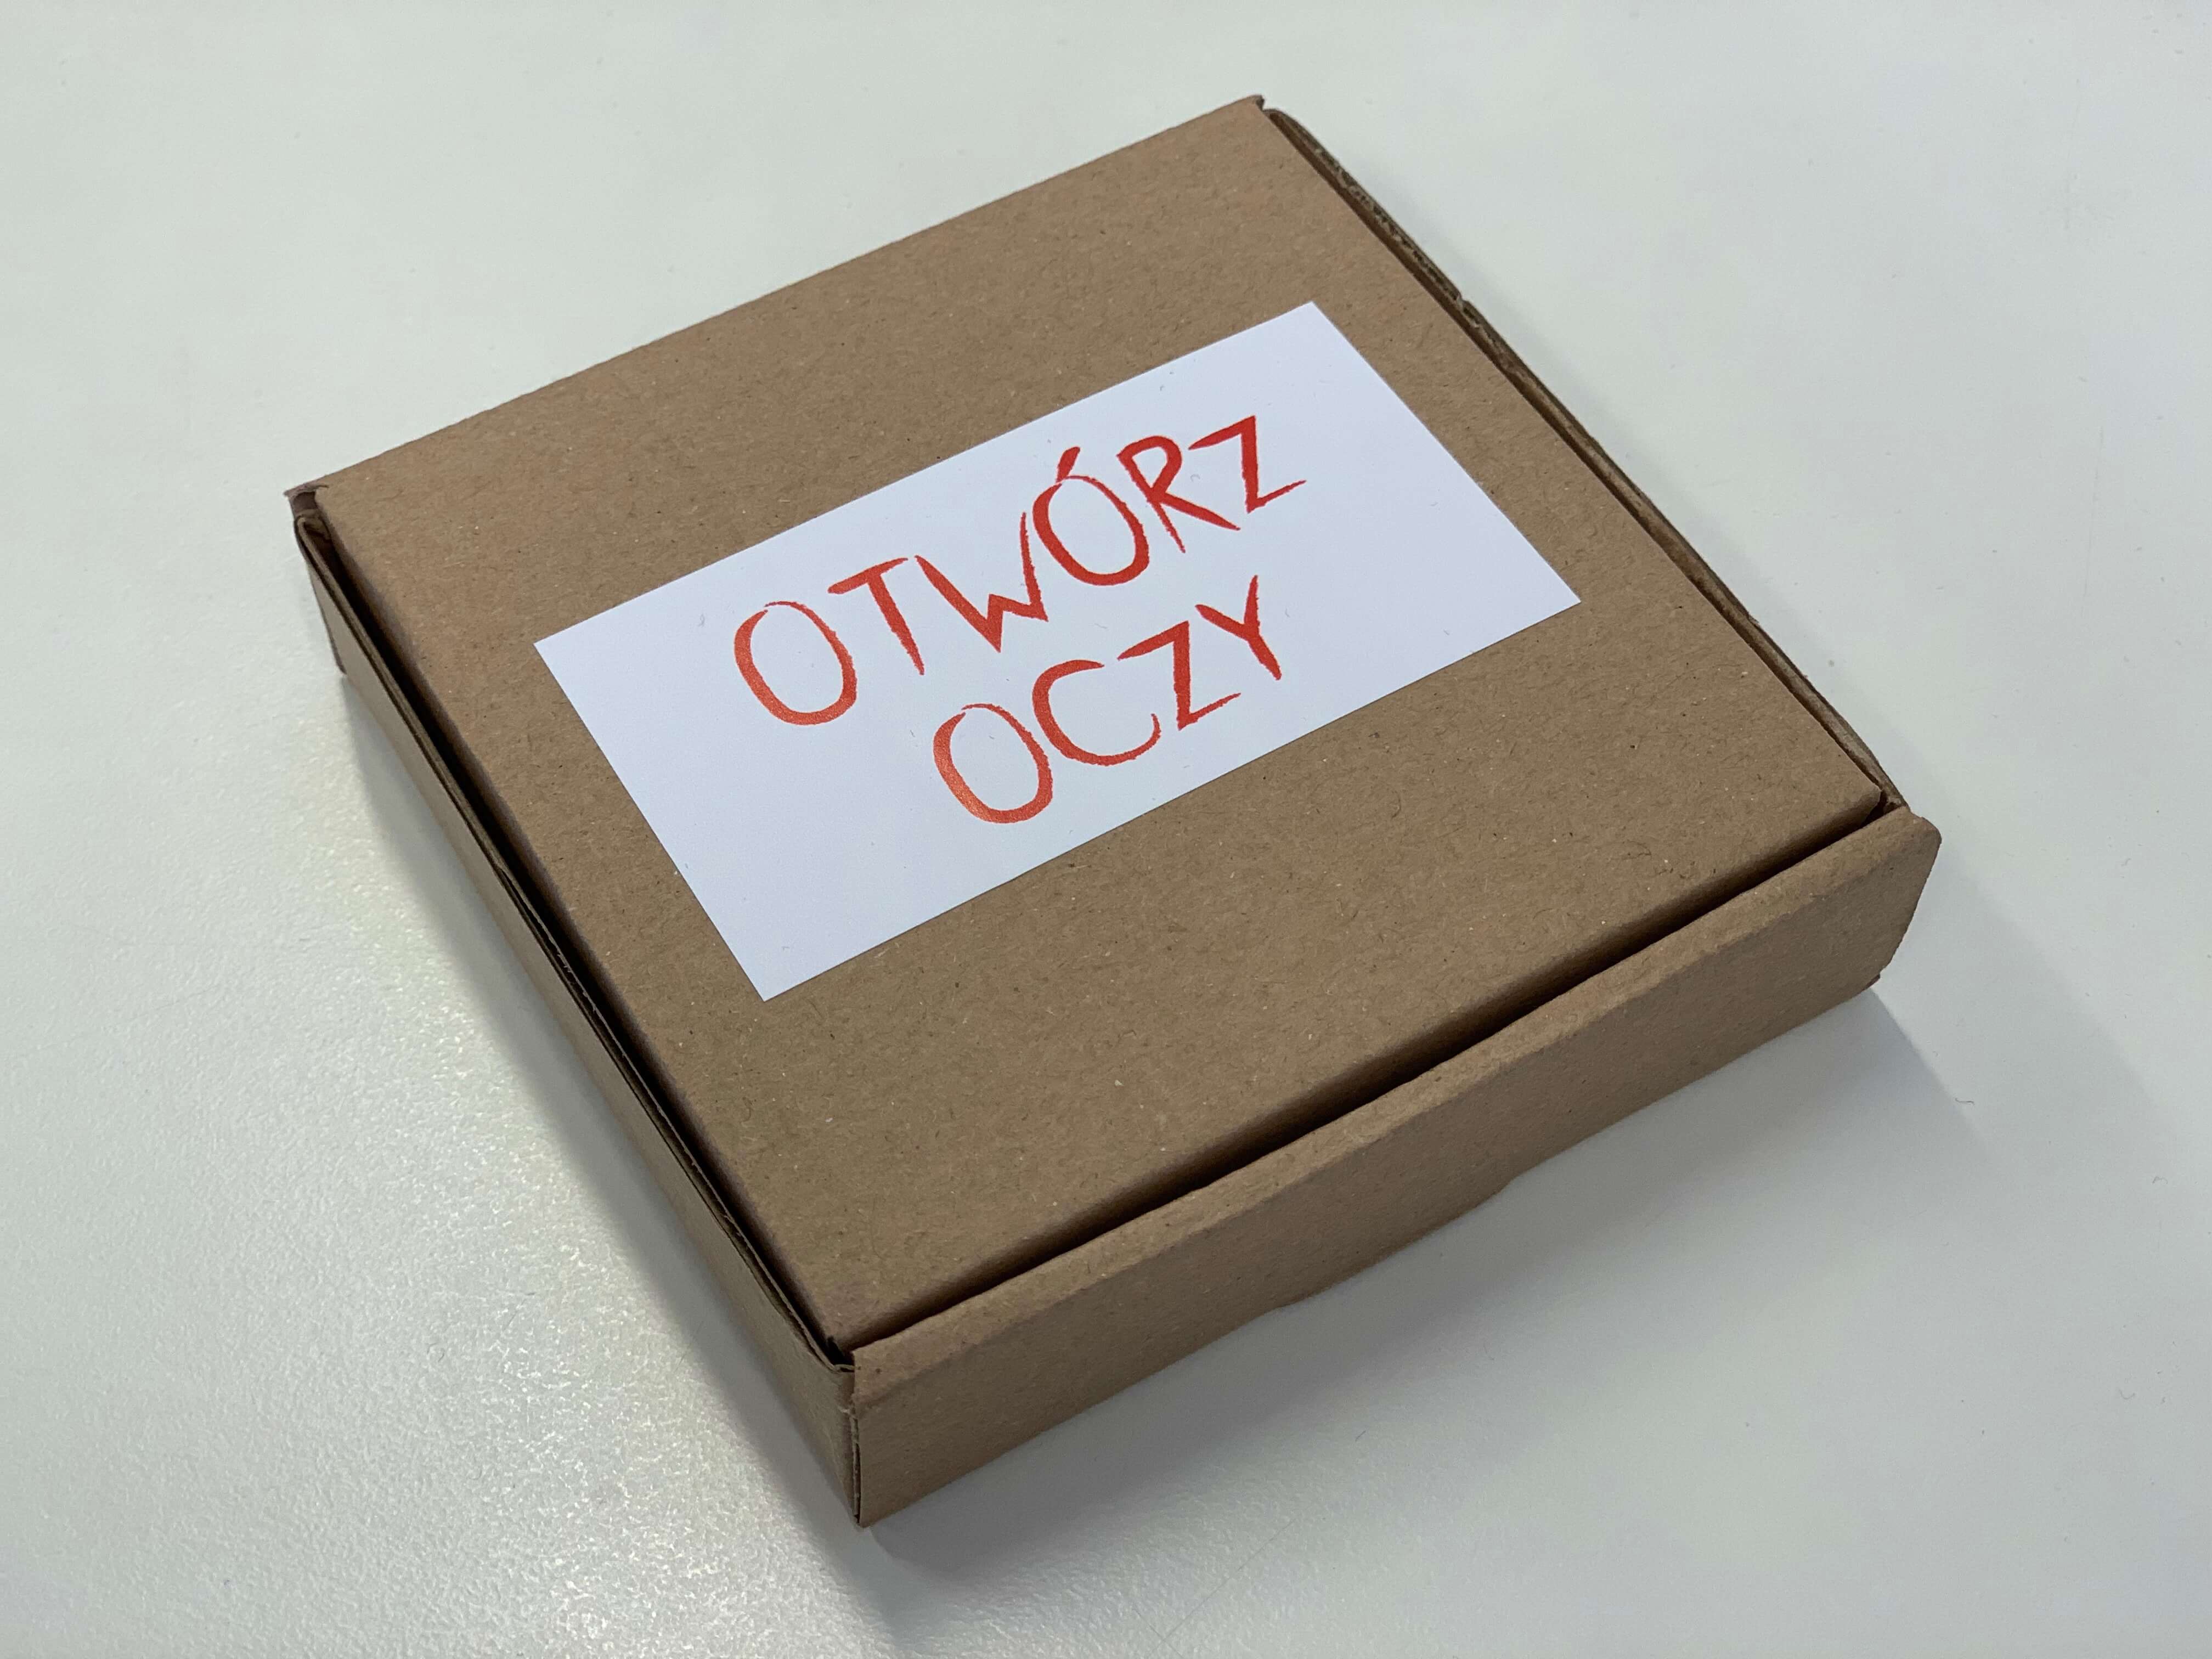 Tekturowe pudełeczko, z naklejoną białą karteczką z czerwonym napisem "Otwórz oczy"